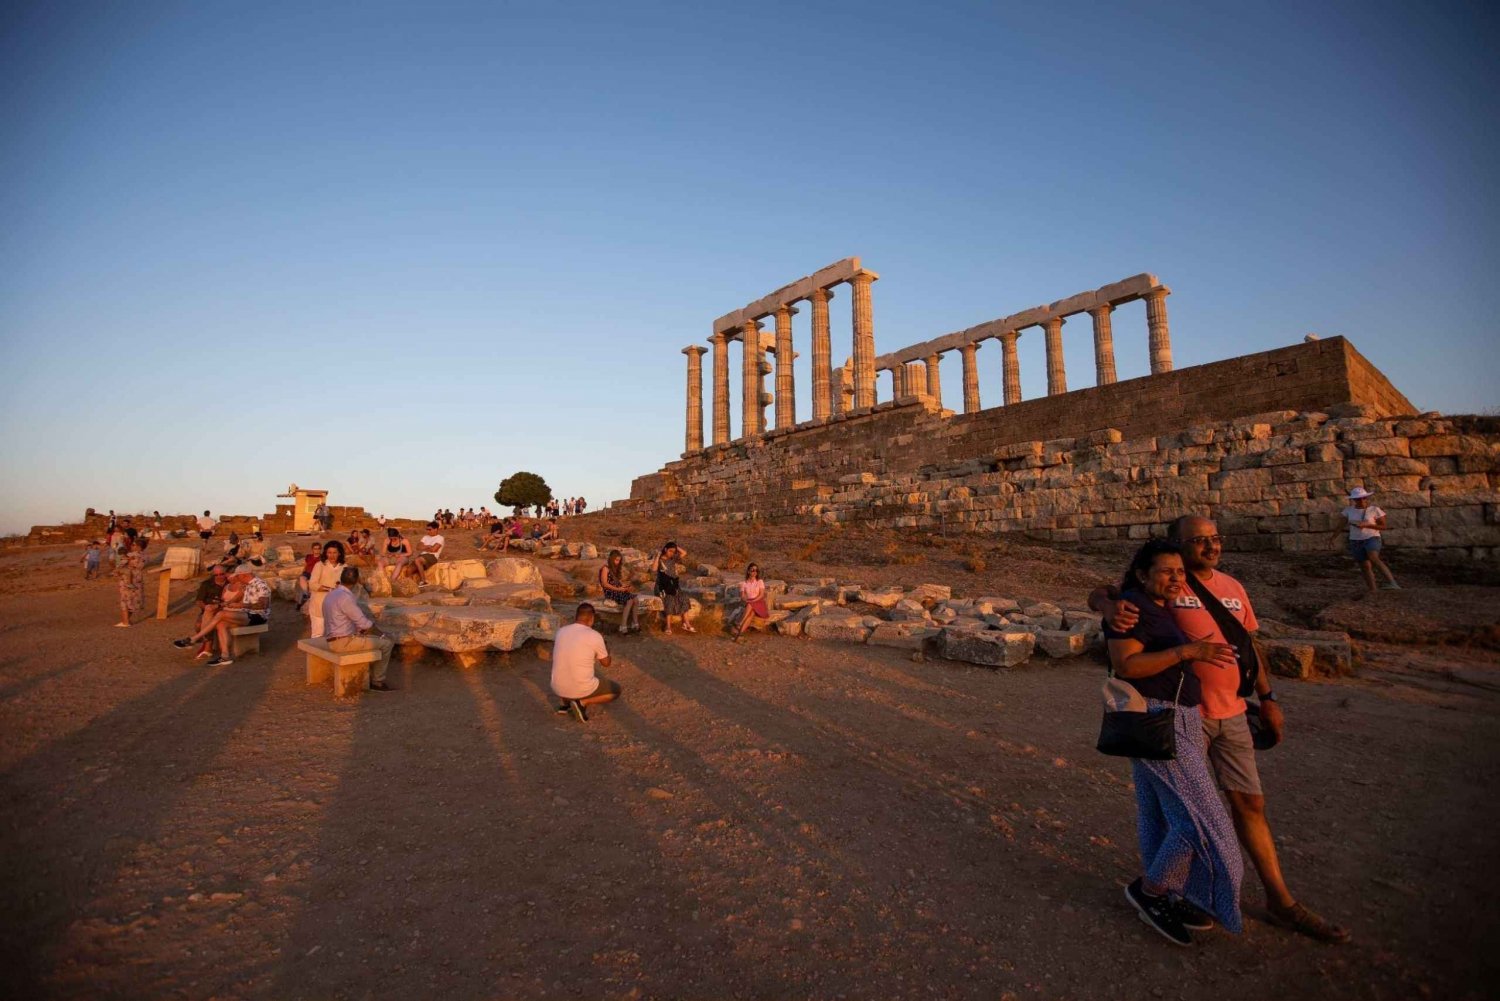 Athen: Solnedgangstur til Cape Sounion og Poseidon-templet